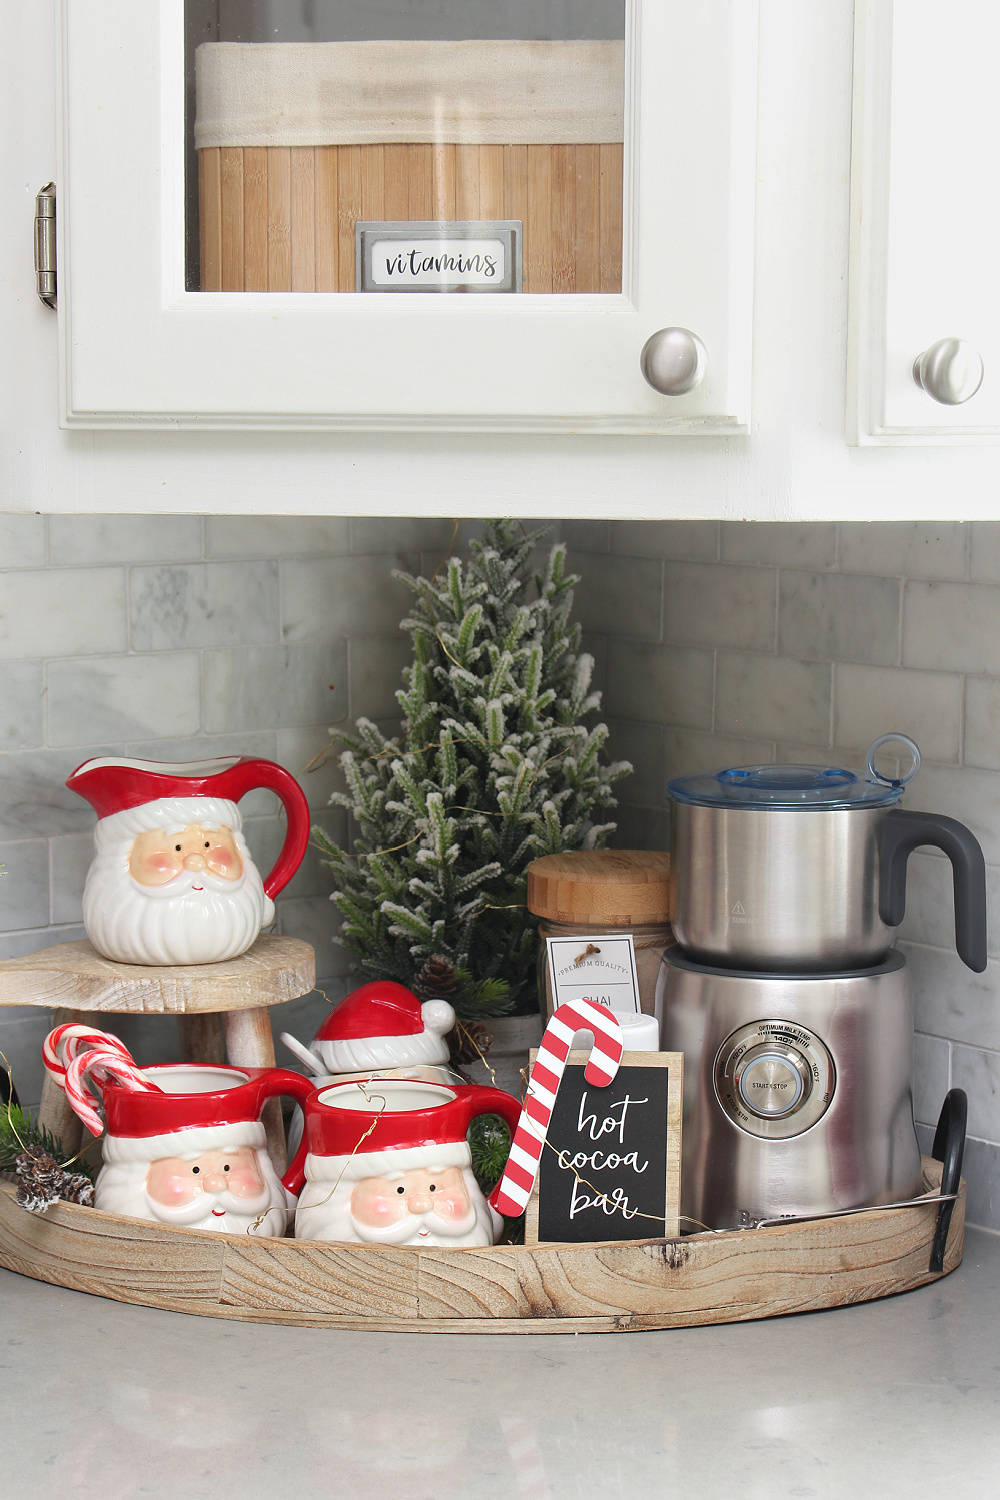 Cute Christmas hot beverage bar with Santa mugs.